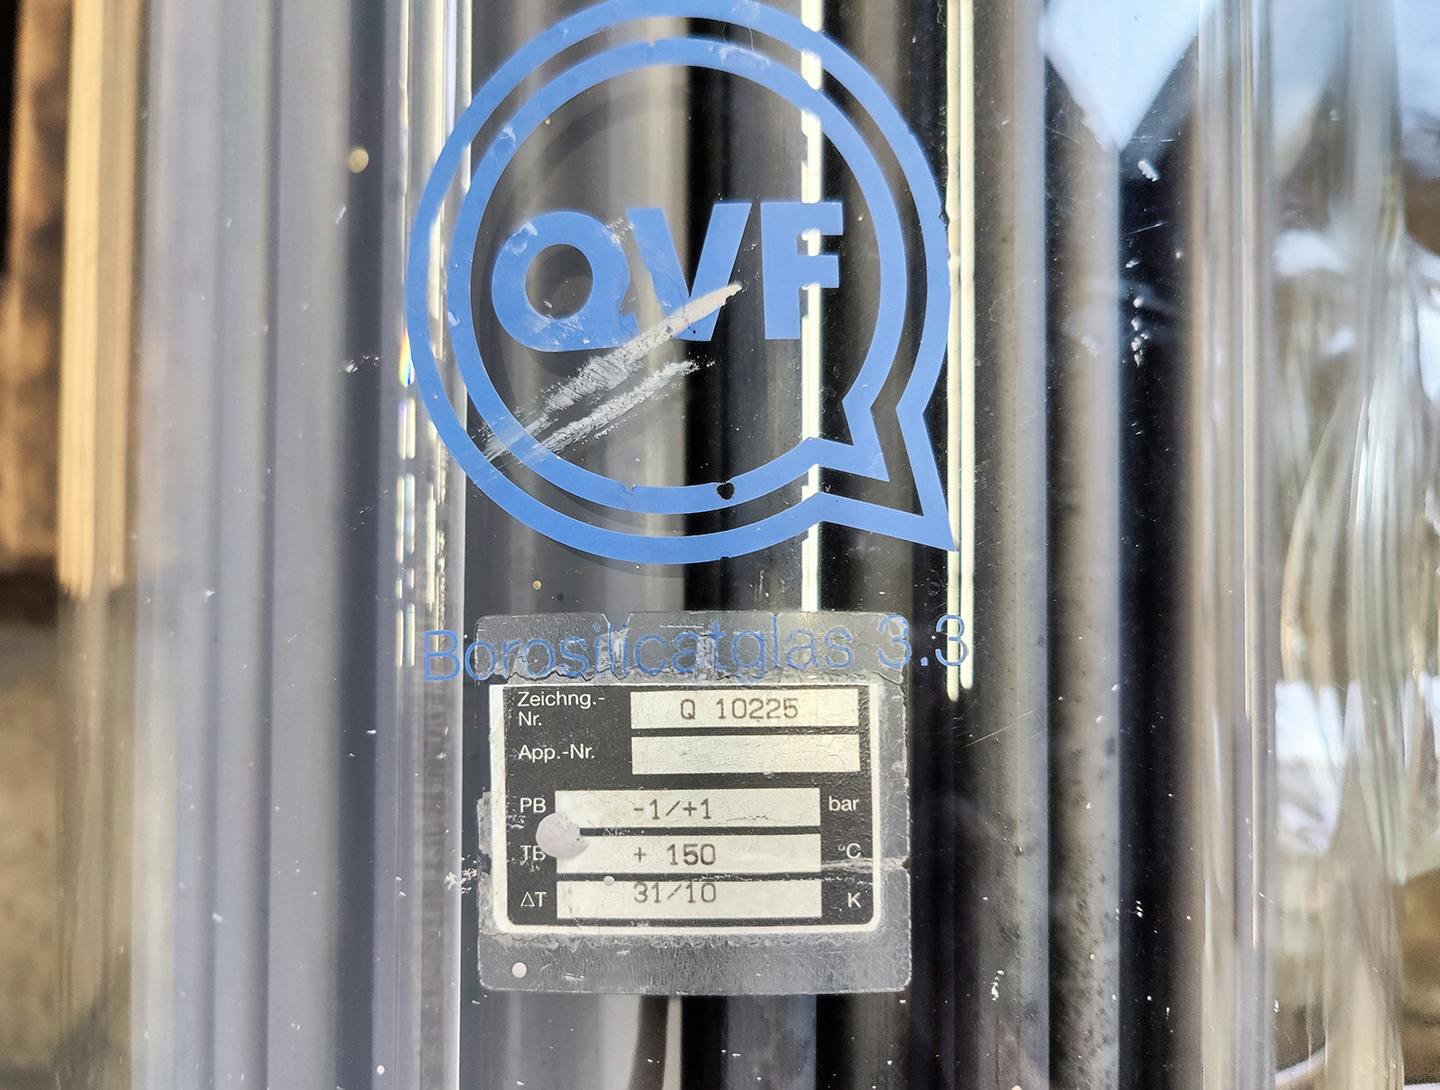 QVF Glasstechnik S-ROB71/300/SH/3SIC - 7,1 m² - Intercambiador de calor de carcasa y tubos - image 8